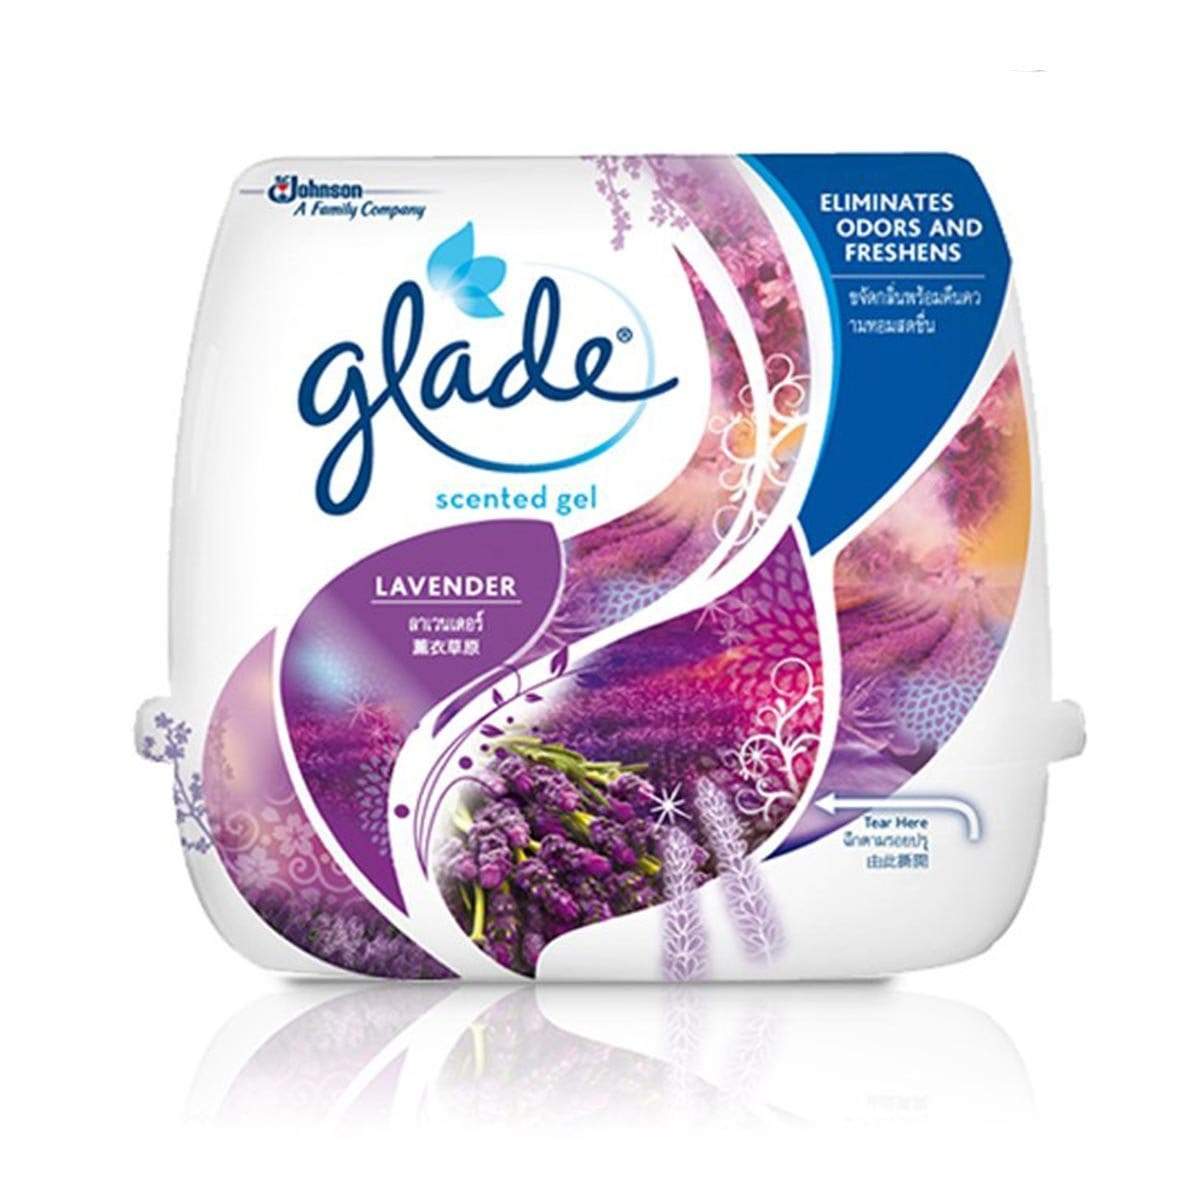 Glade Scented Gel Lavender Air Freshener 180g